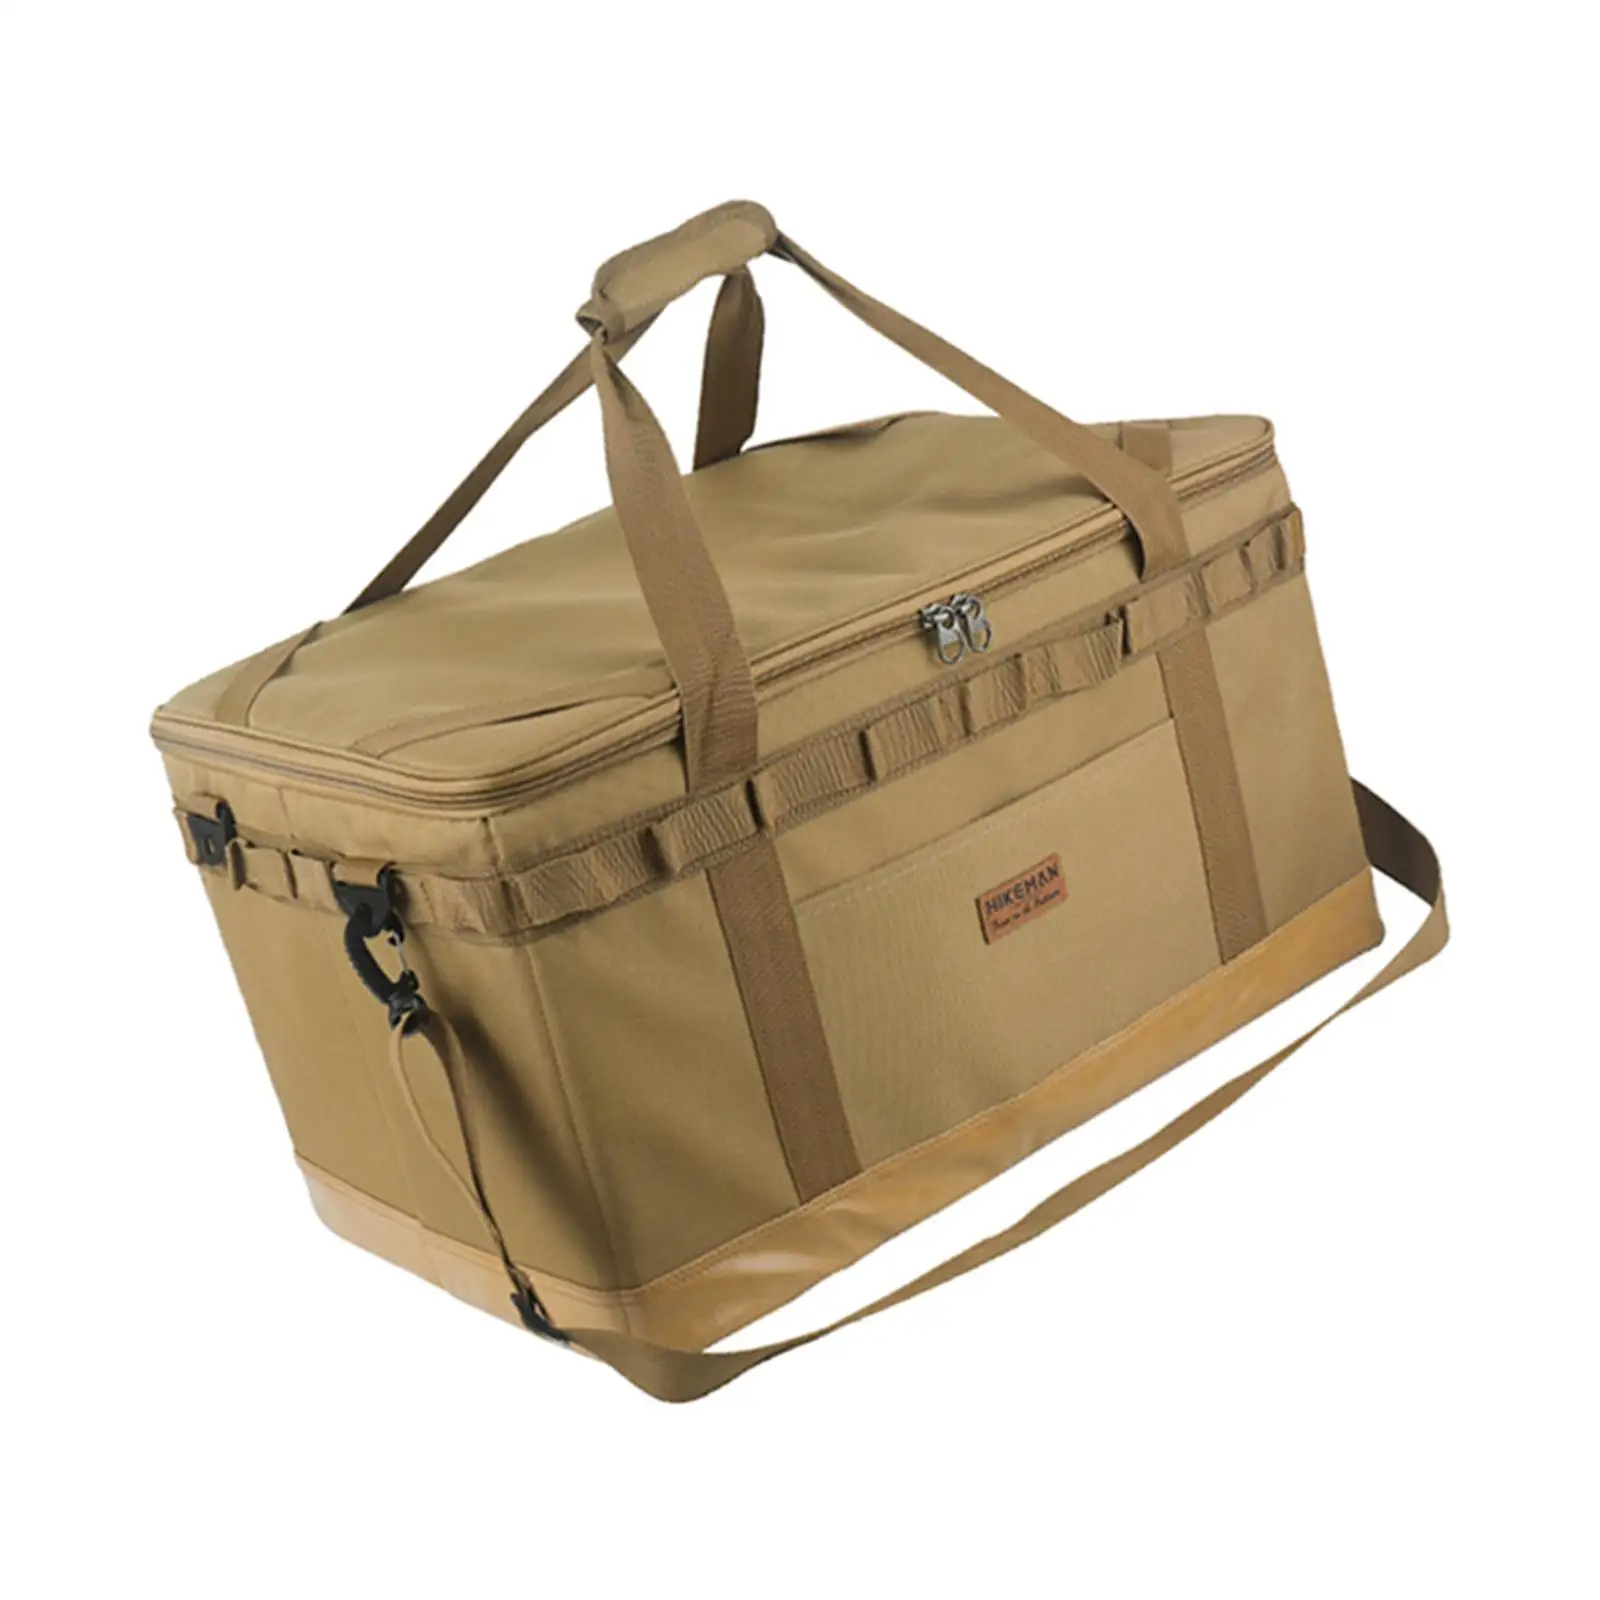 Large Capacity Camping Gear Bag Oxford Cloth Waterproof Travel Bag Duffel Bag